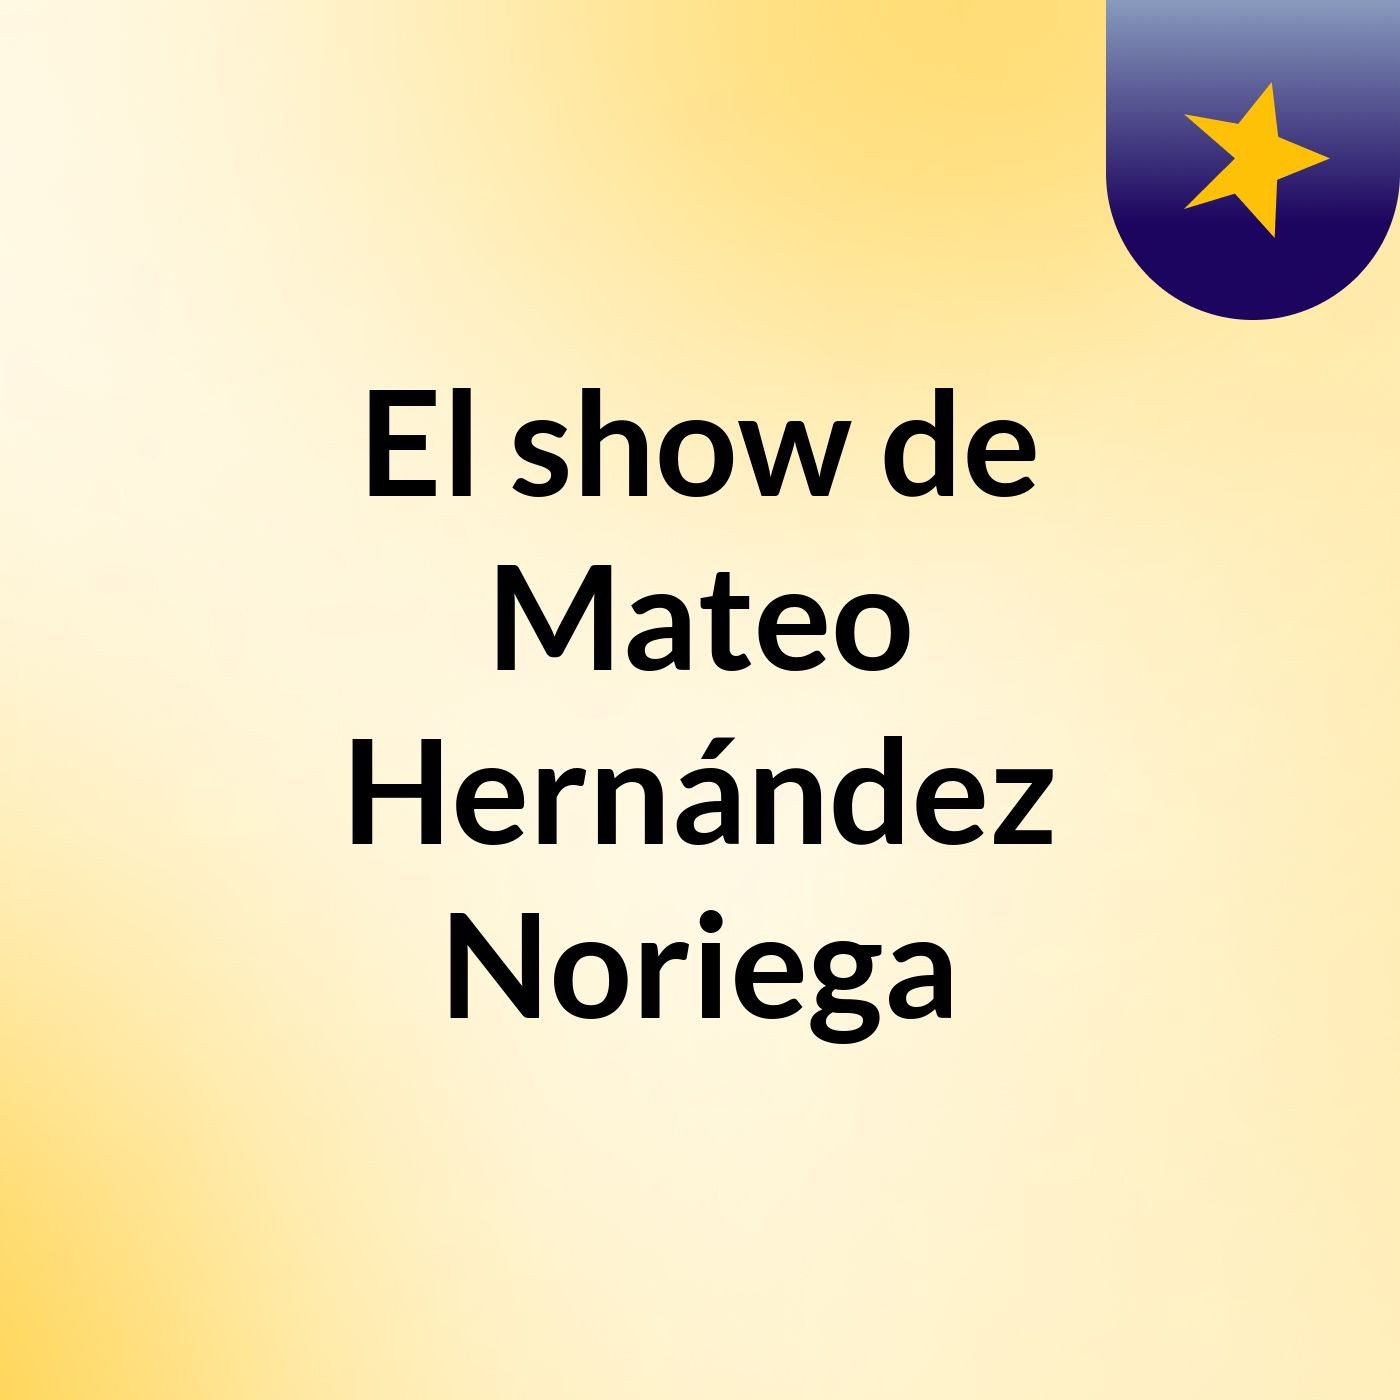 El show de Mateo Hernández Noriega